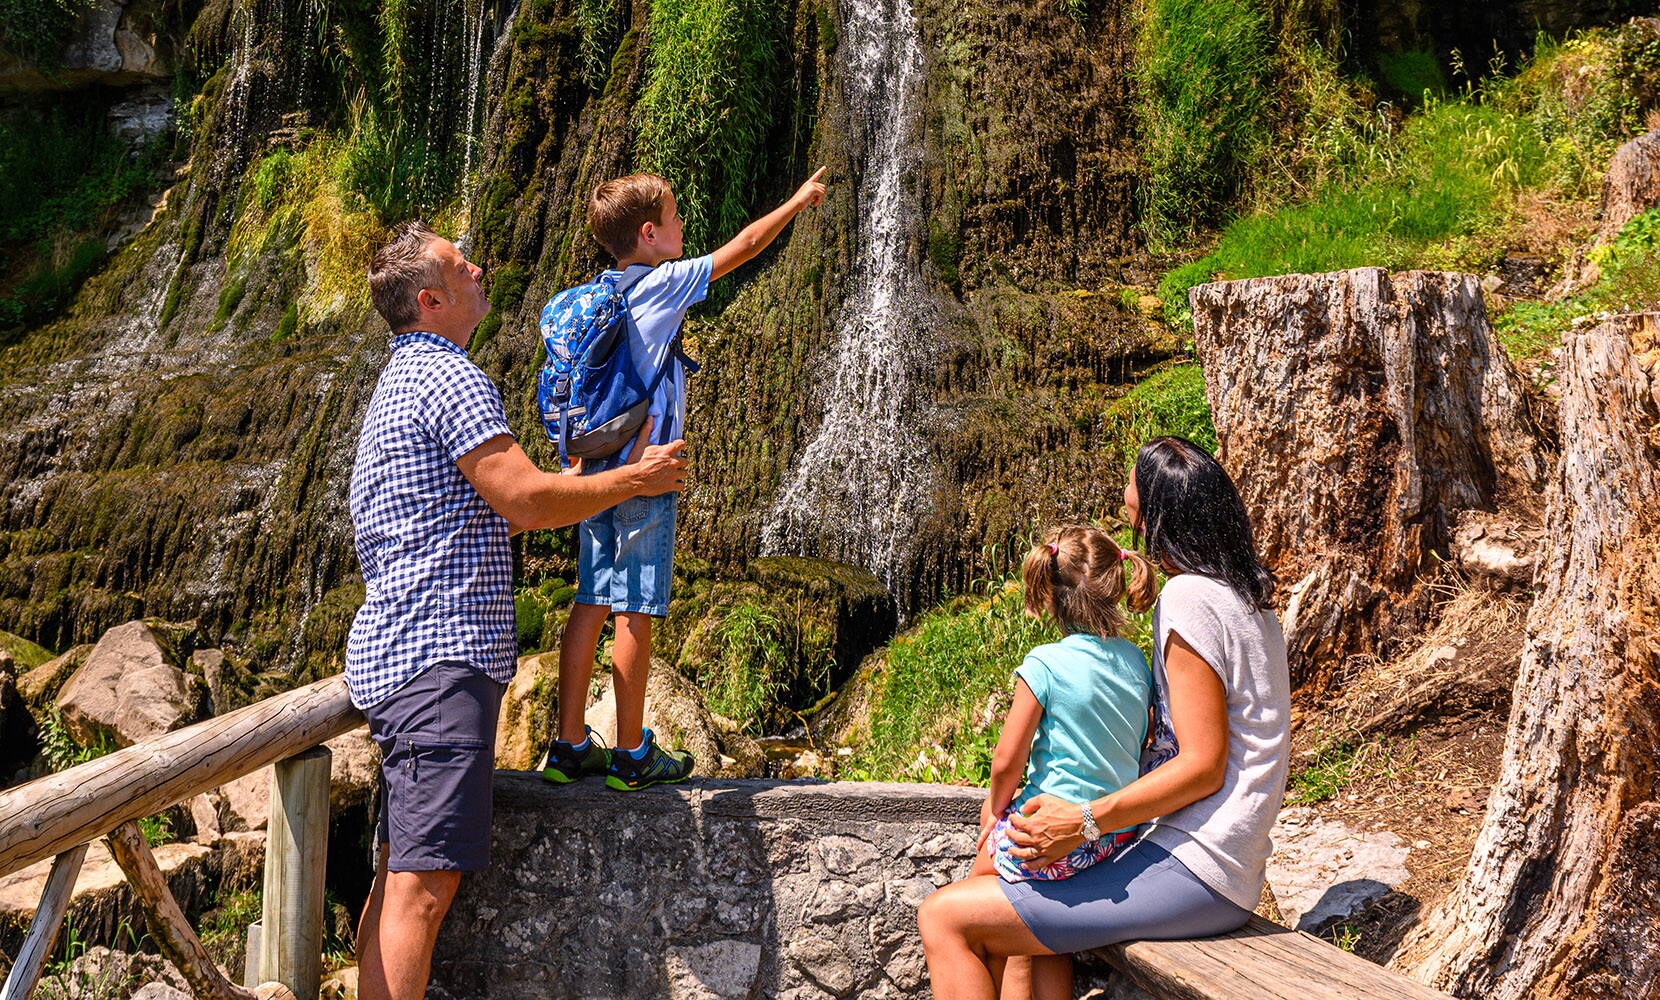 Escursione per famiglie Grotte di San Beato. Scoprite l'affascinante grotta a goccia insieme alla vostra famiglia e immergetevi nell'avventura mistica del leggendario parco naturale di San Beato.